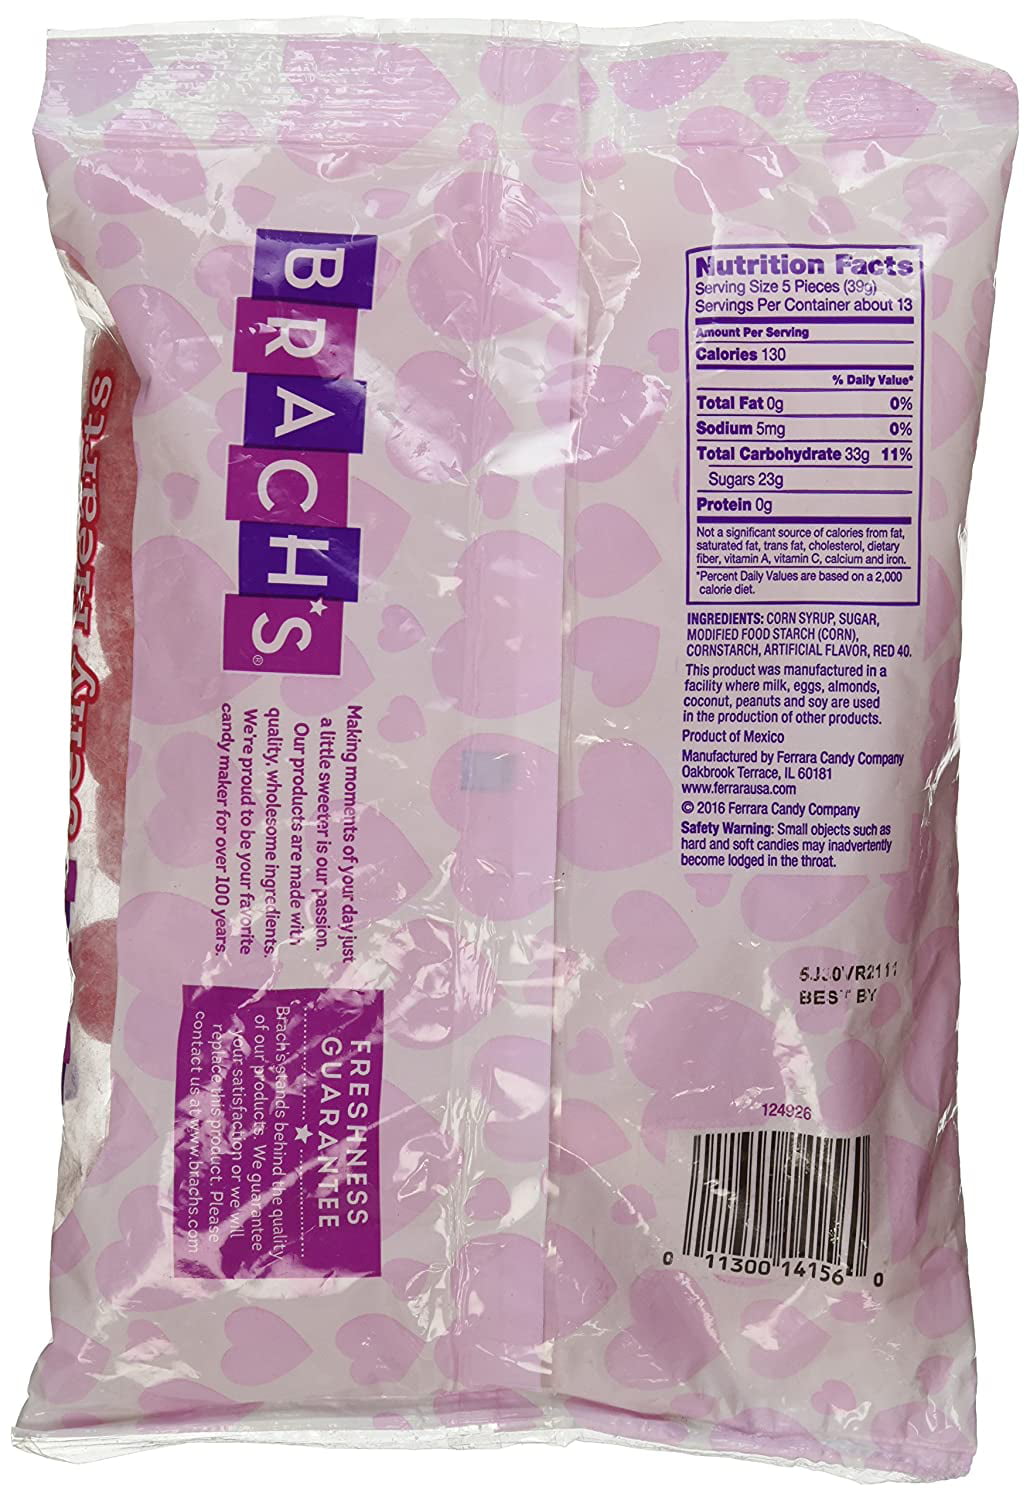 Brach's Cinnamon Jelly Hearts: 12-Ounce Bag